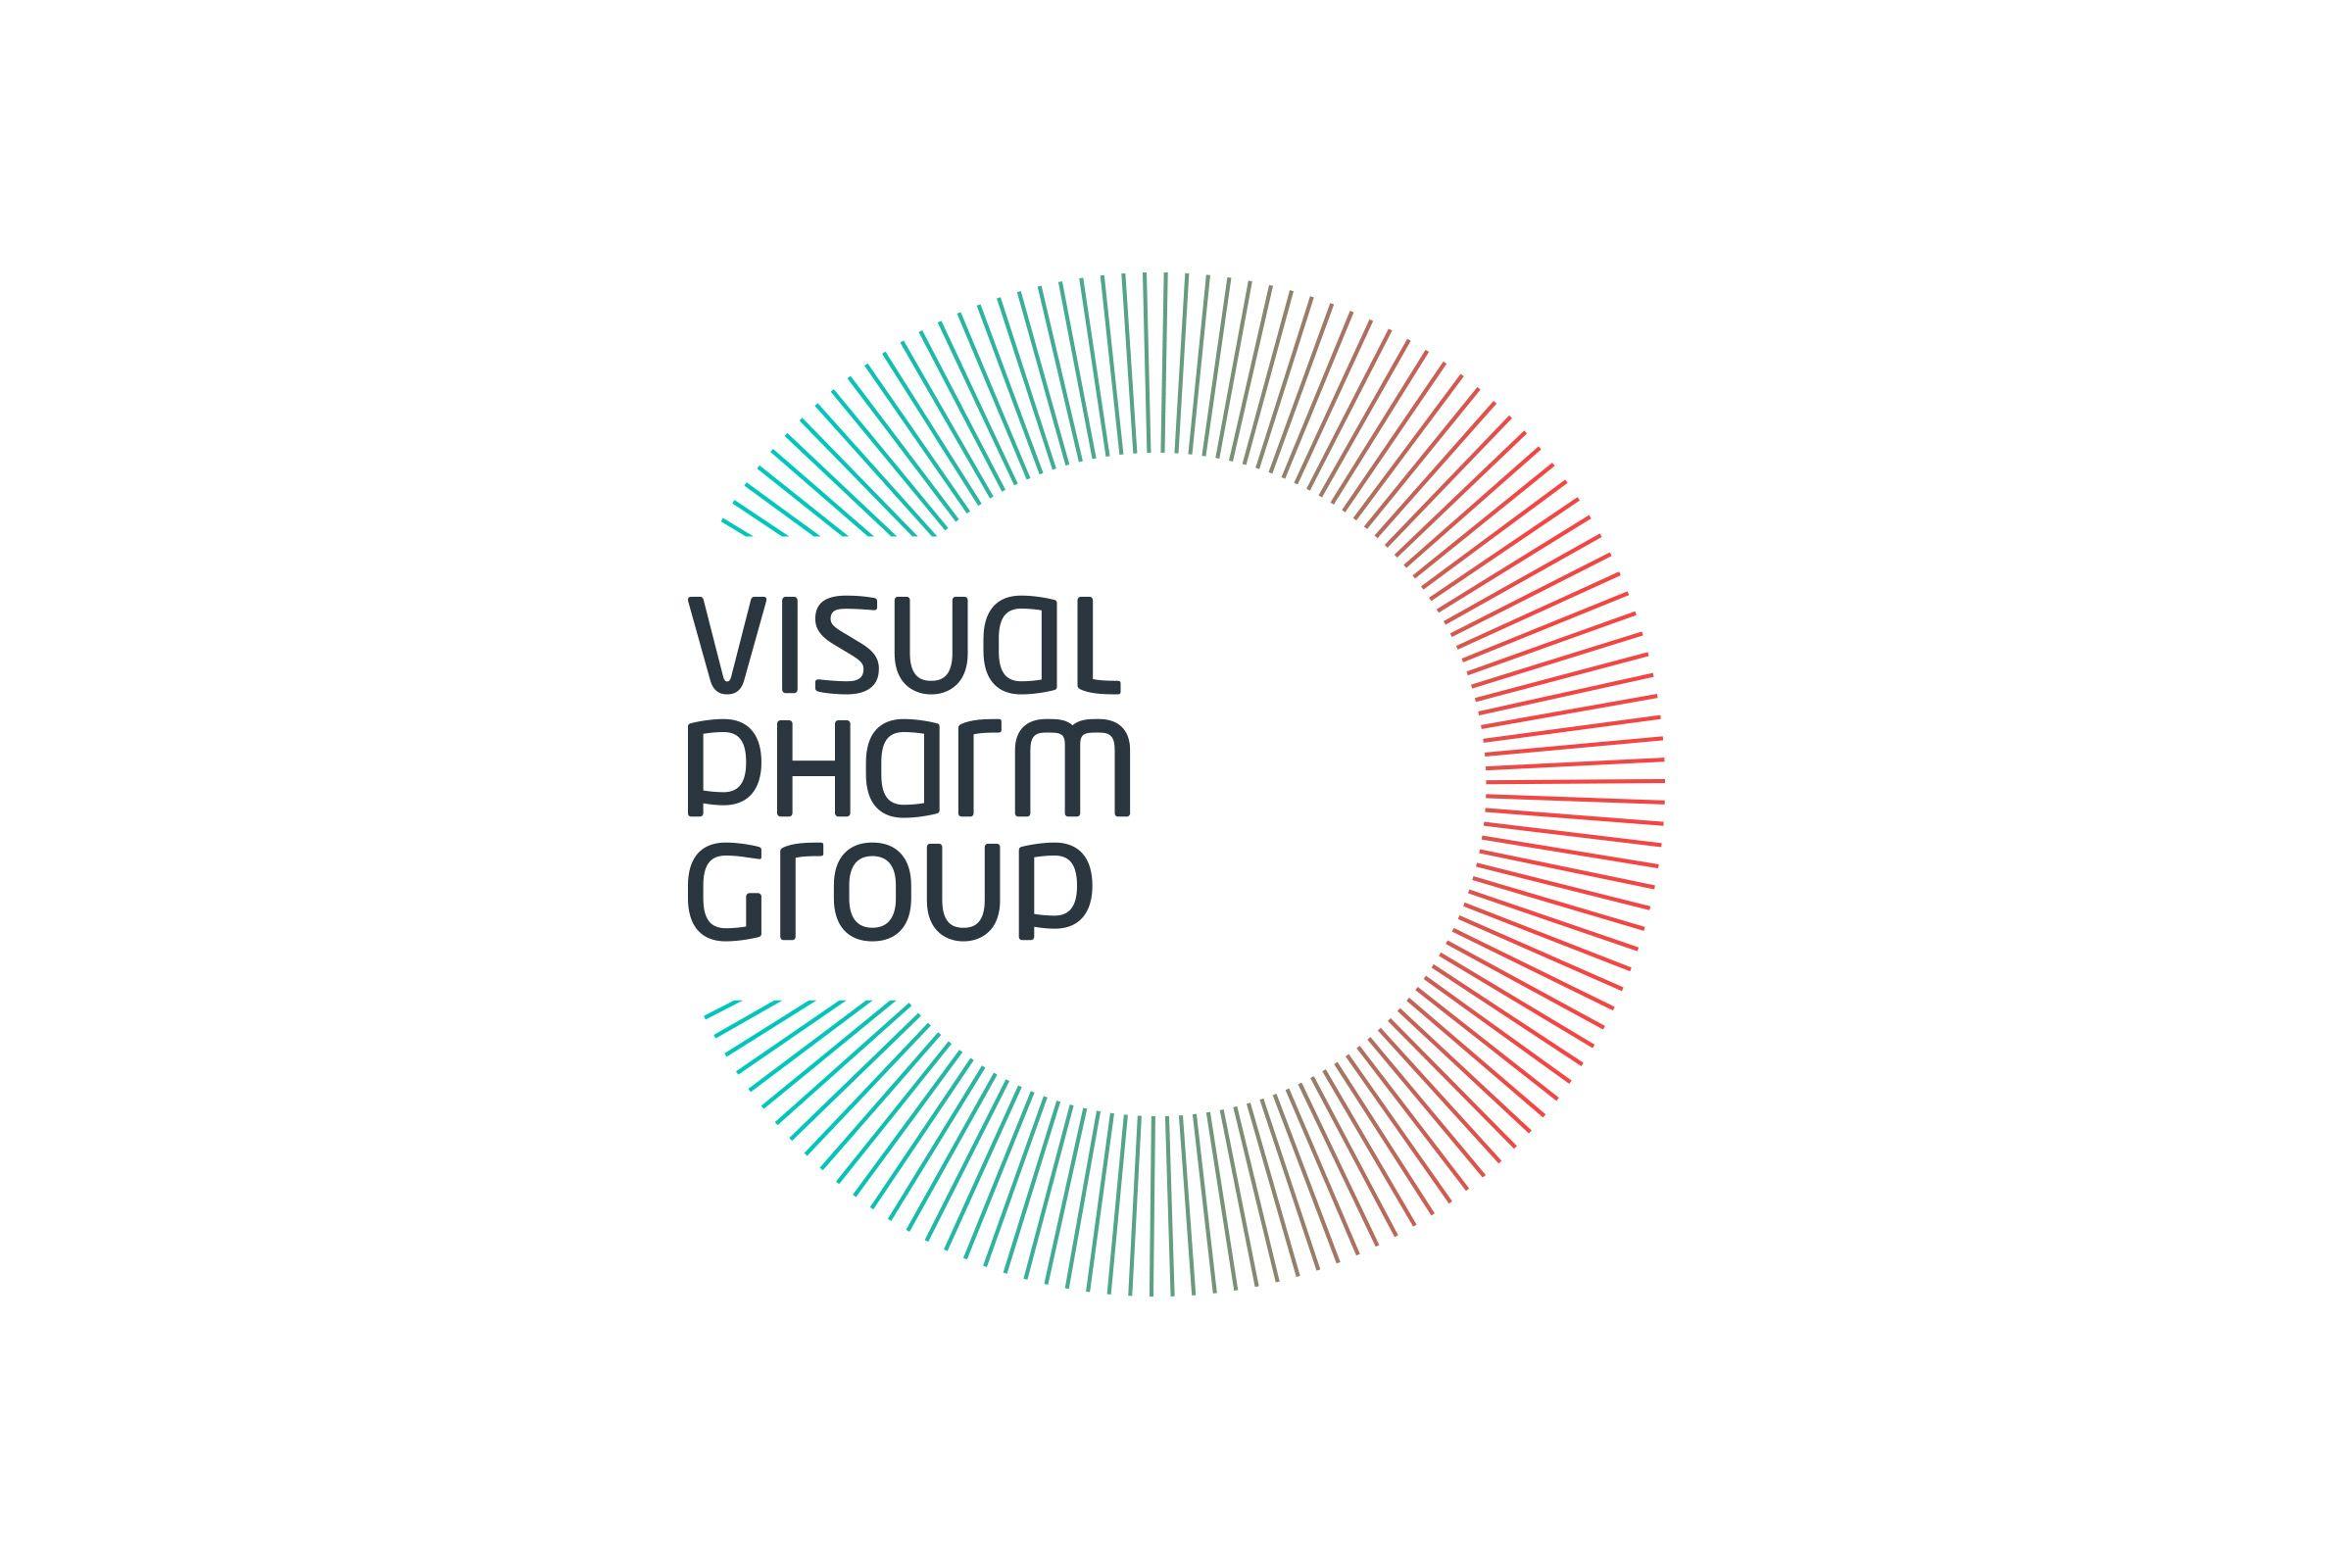 VPG Logo - vpg logo | Logotype | Pinterest | Logos